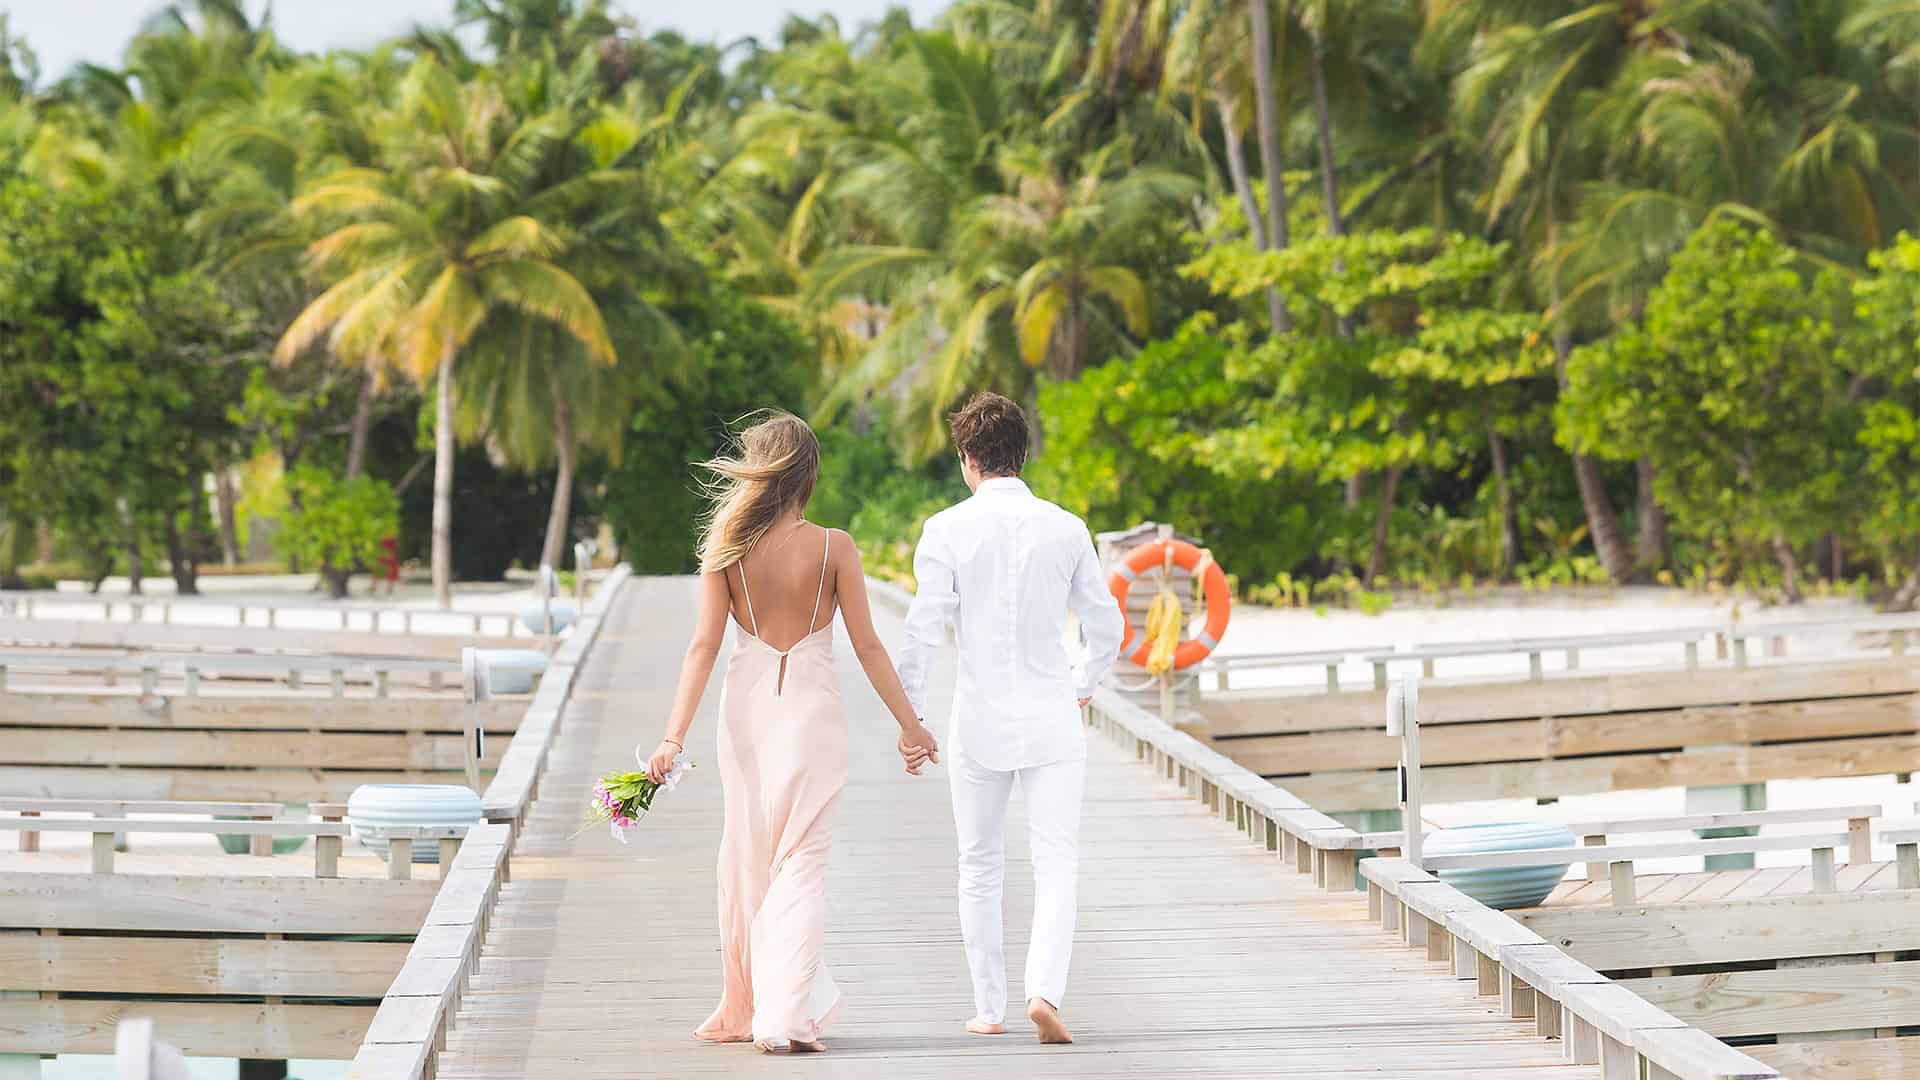 Les mariés marchent main dans la main dans une allée de mariage sur la plage bordée de palmiers.